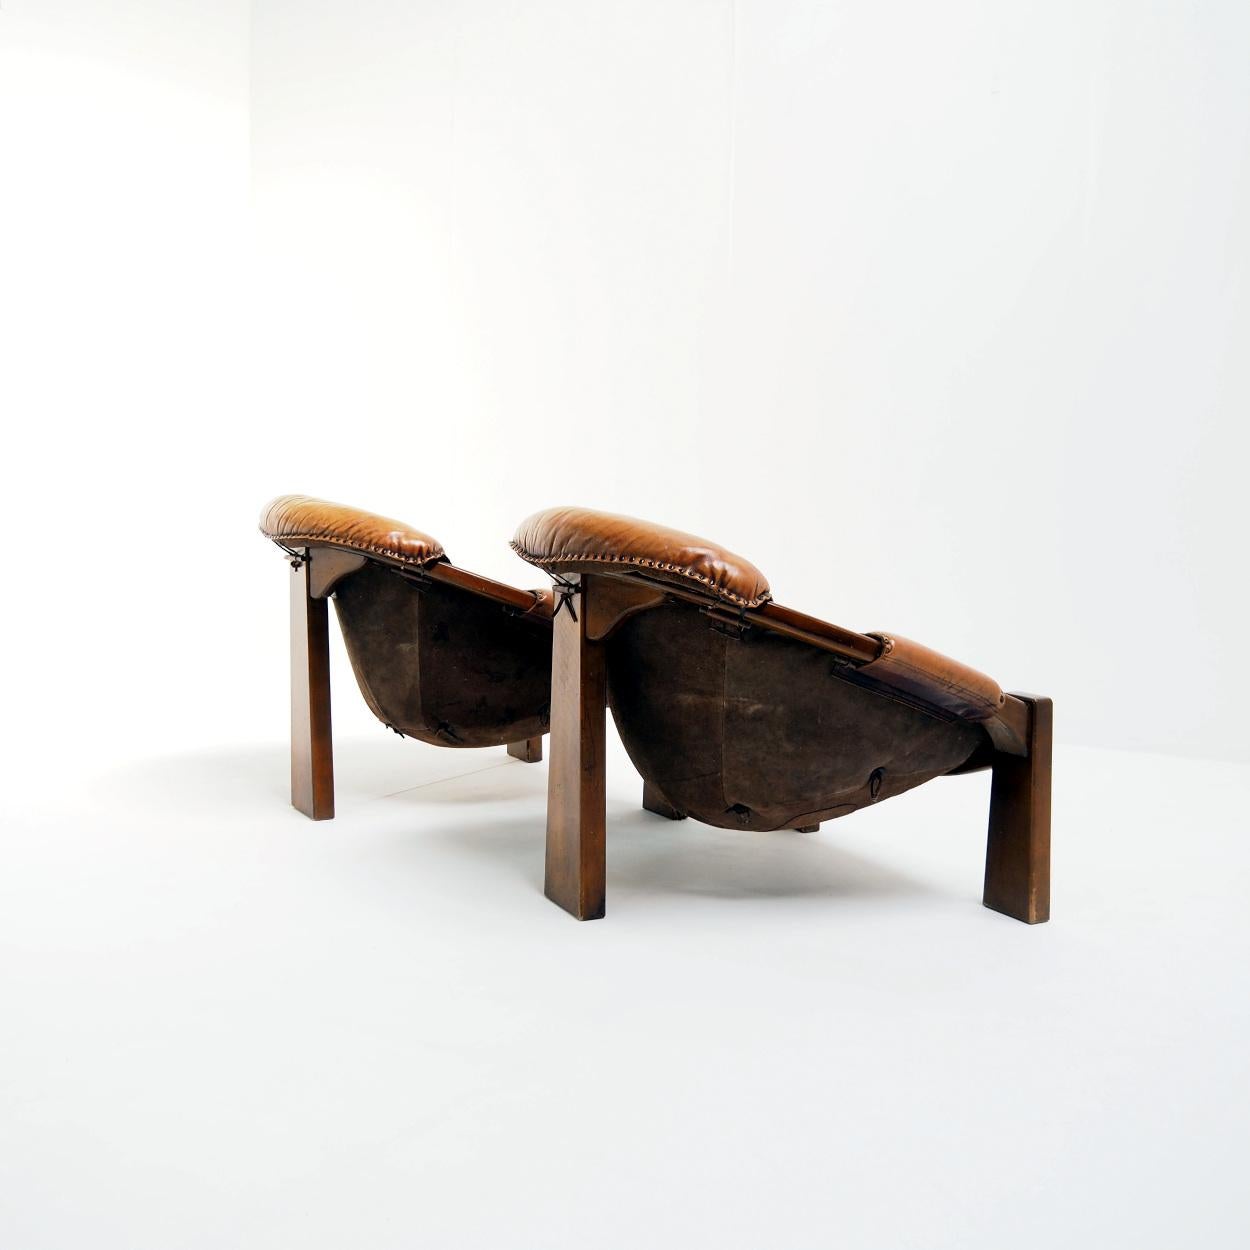 Magnifique ensemble de chaises dans le style brutaliste brésilien des années 1970.

Les chaises ont un beau cuir patiné avec des signes d'usure correspondant à l'âge et à l'utilisation. Ils sont fabriqués en cuir de chèvre épais, avec des coutures